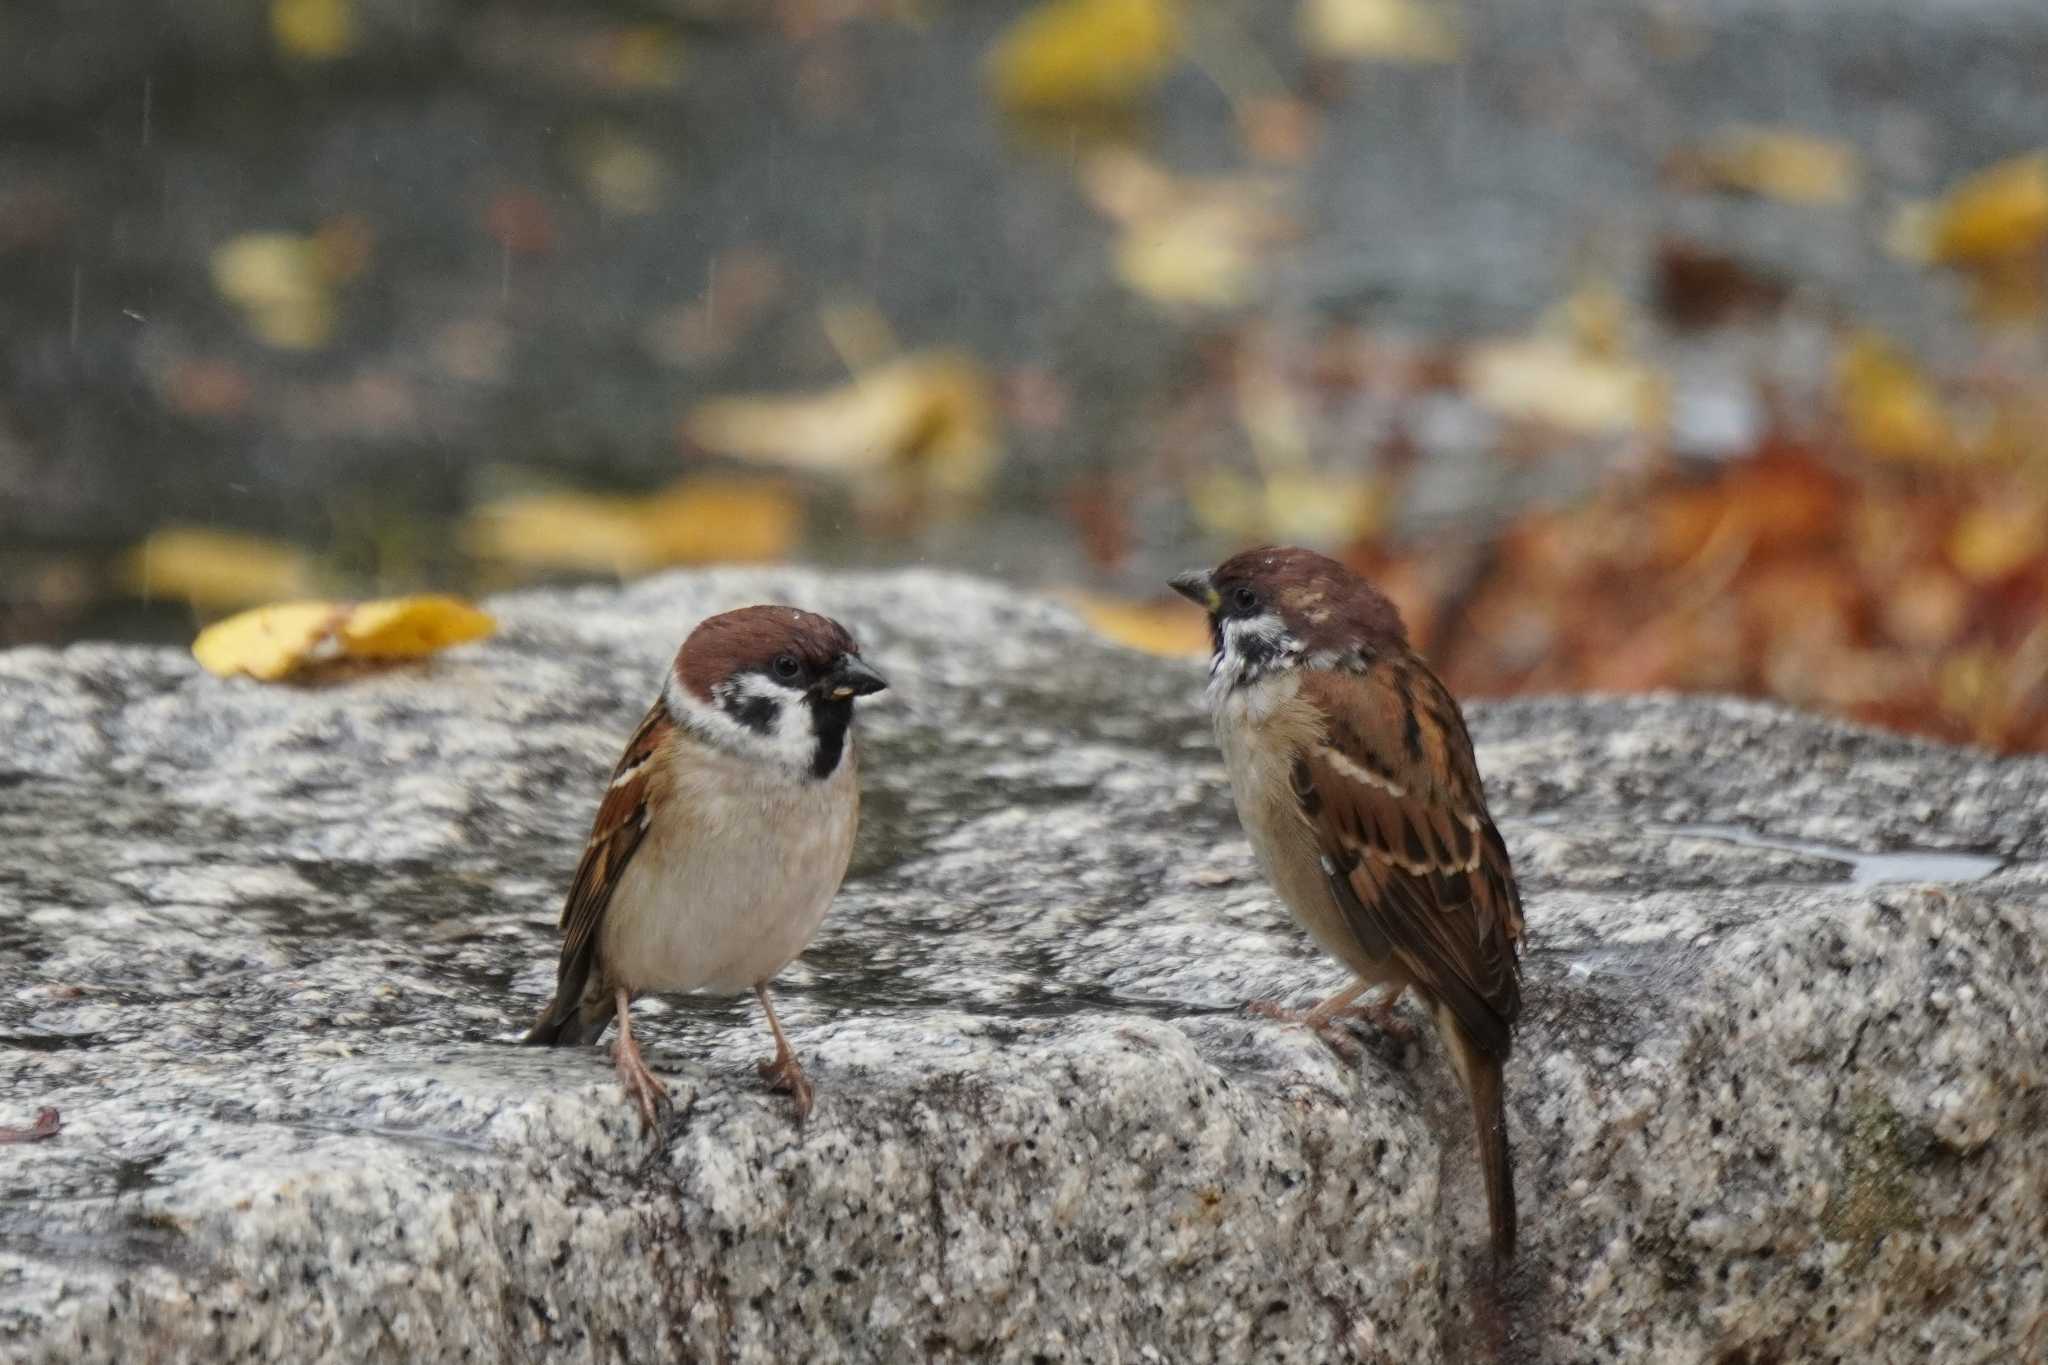 Photo of Eurasian Tree Sparrow at Osaka castle park by jasmine